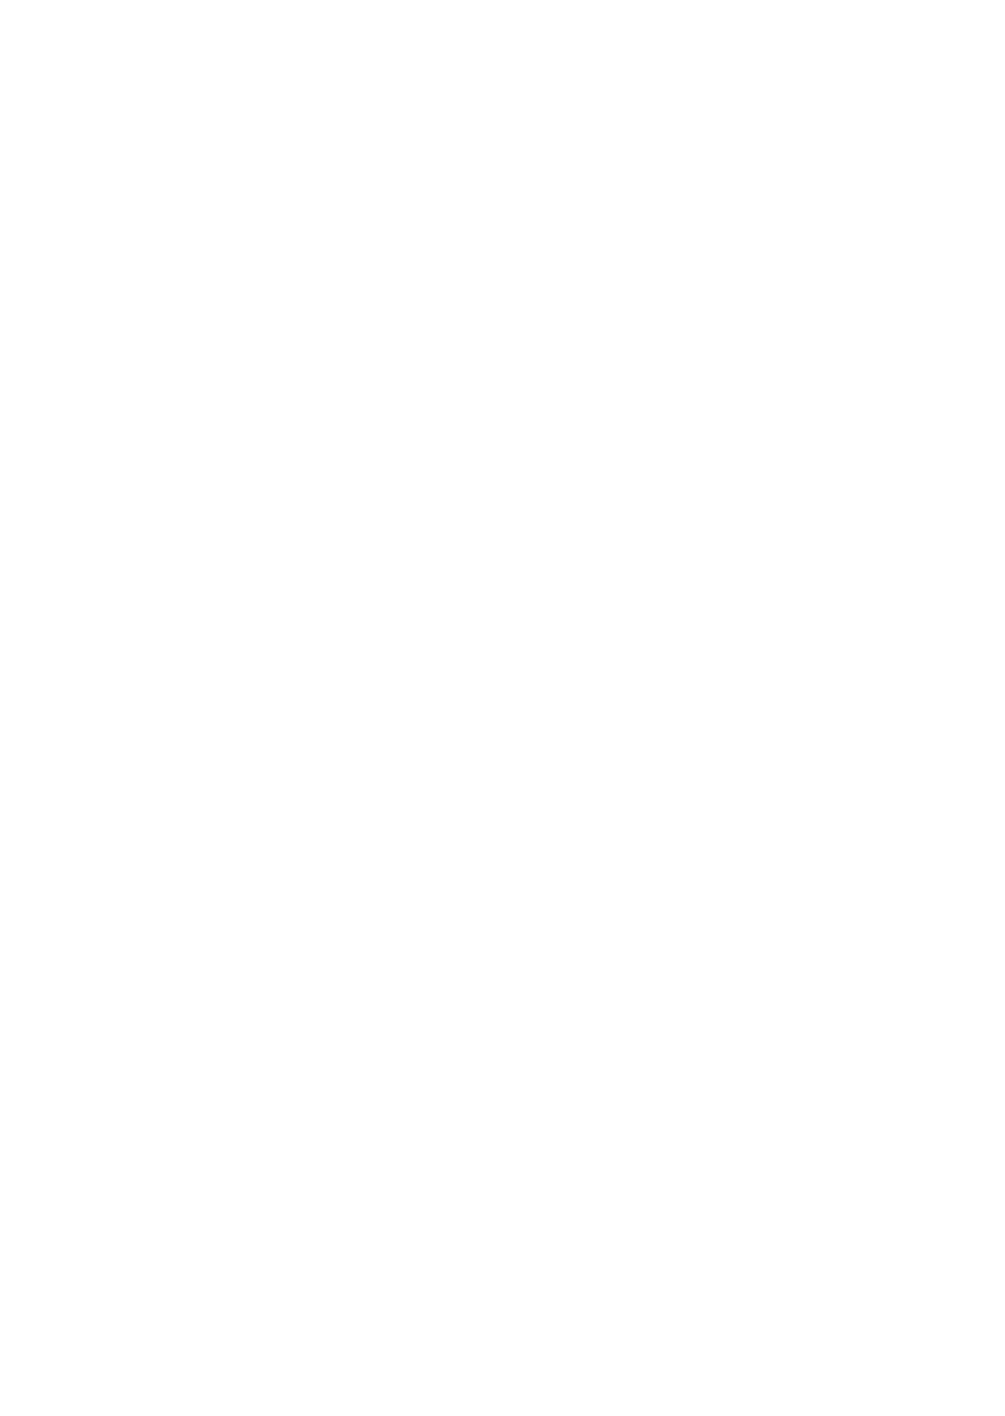 Solvac logo pour fonds sombres (PNG transparent)